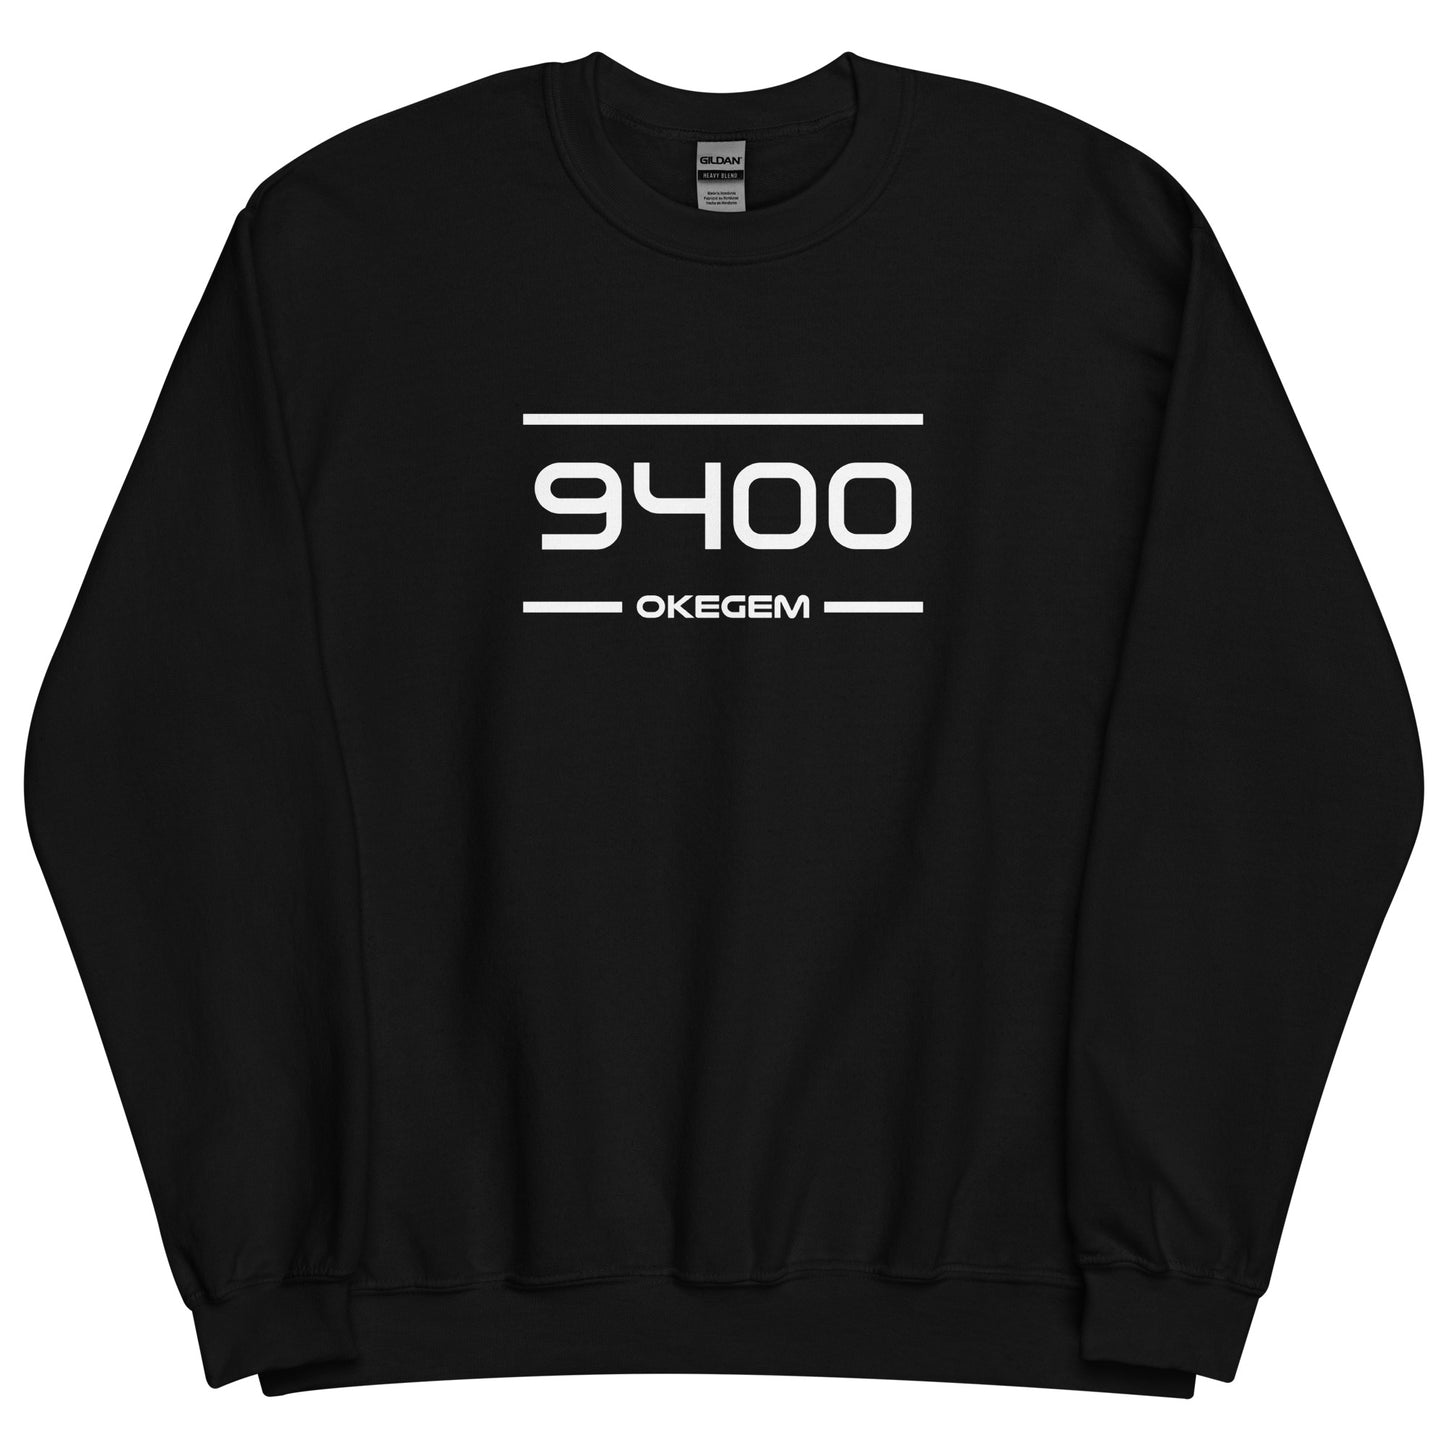 Sweater - 9400 - Okegem (M/V)